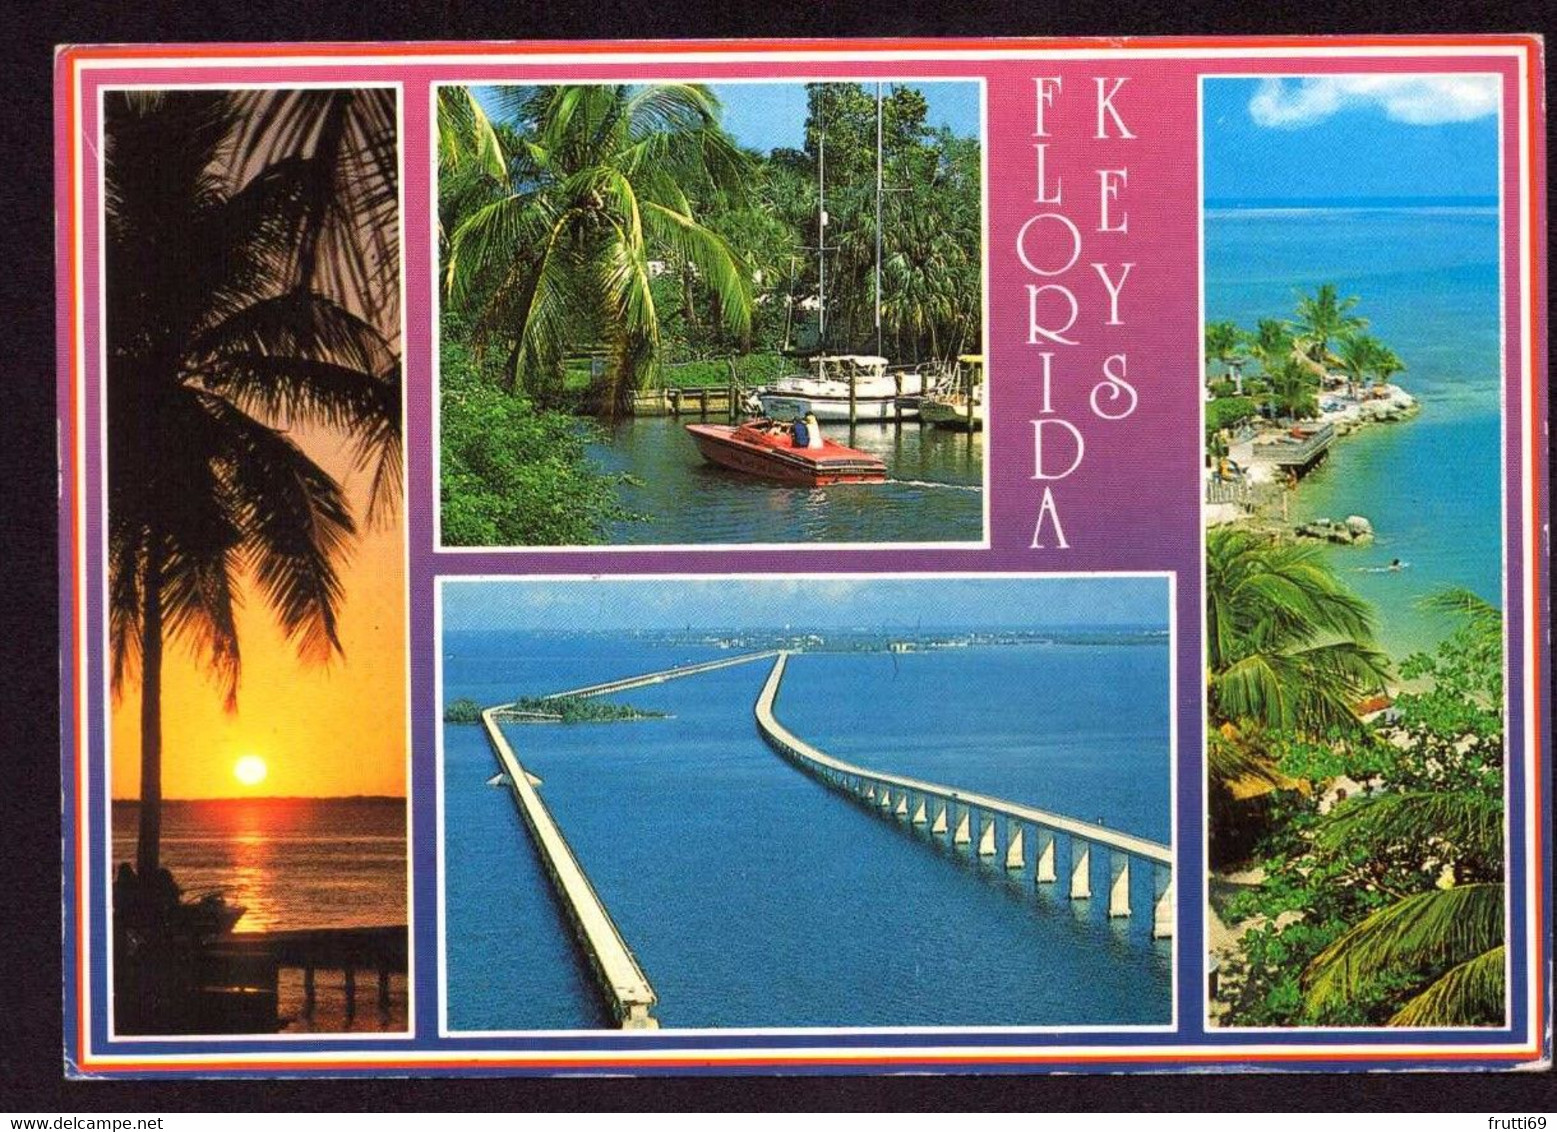 AK 025908 USA - Florida - Florida Keys - Key West & The Keys